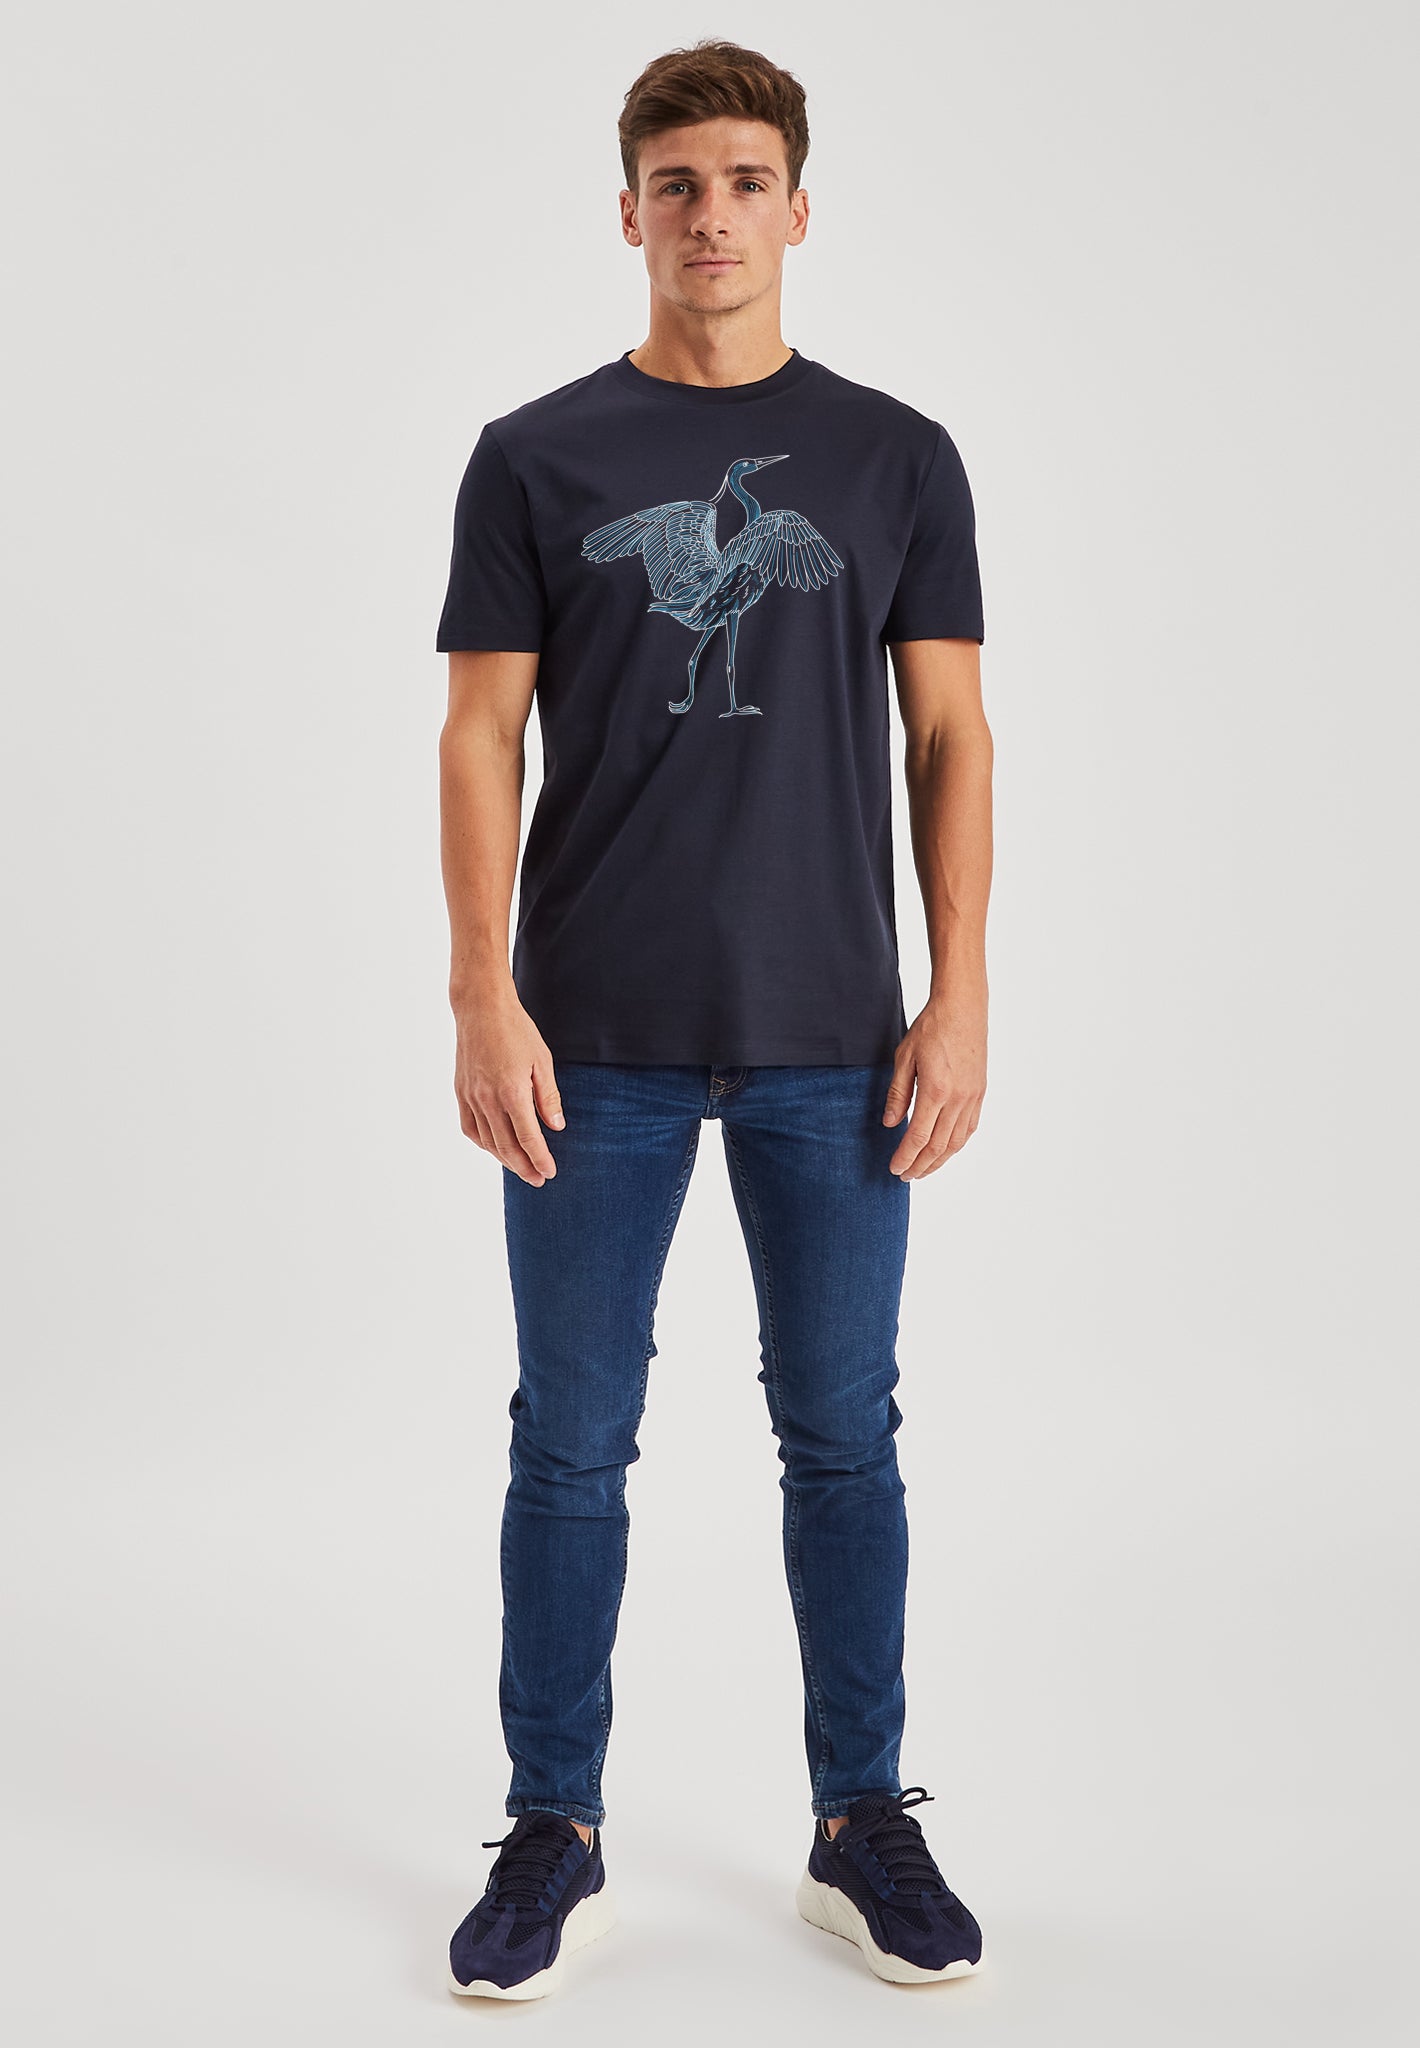 Heron Navy Luxury T-Shirt